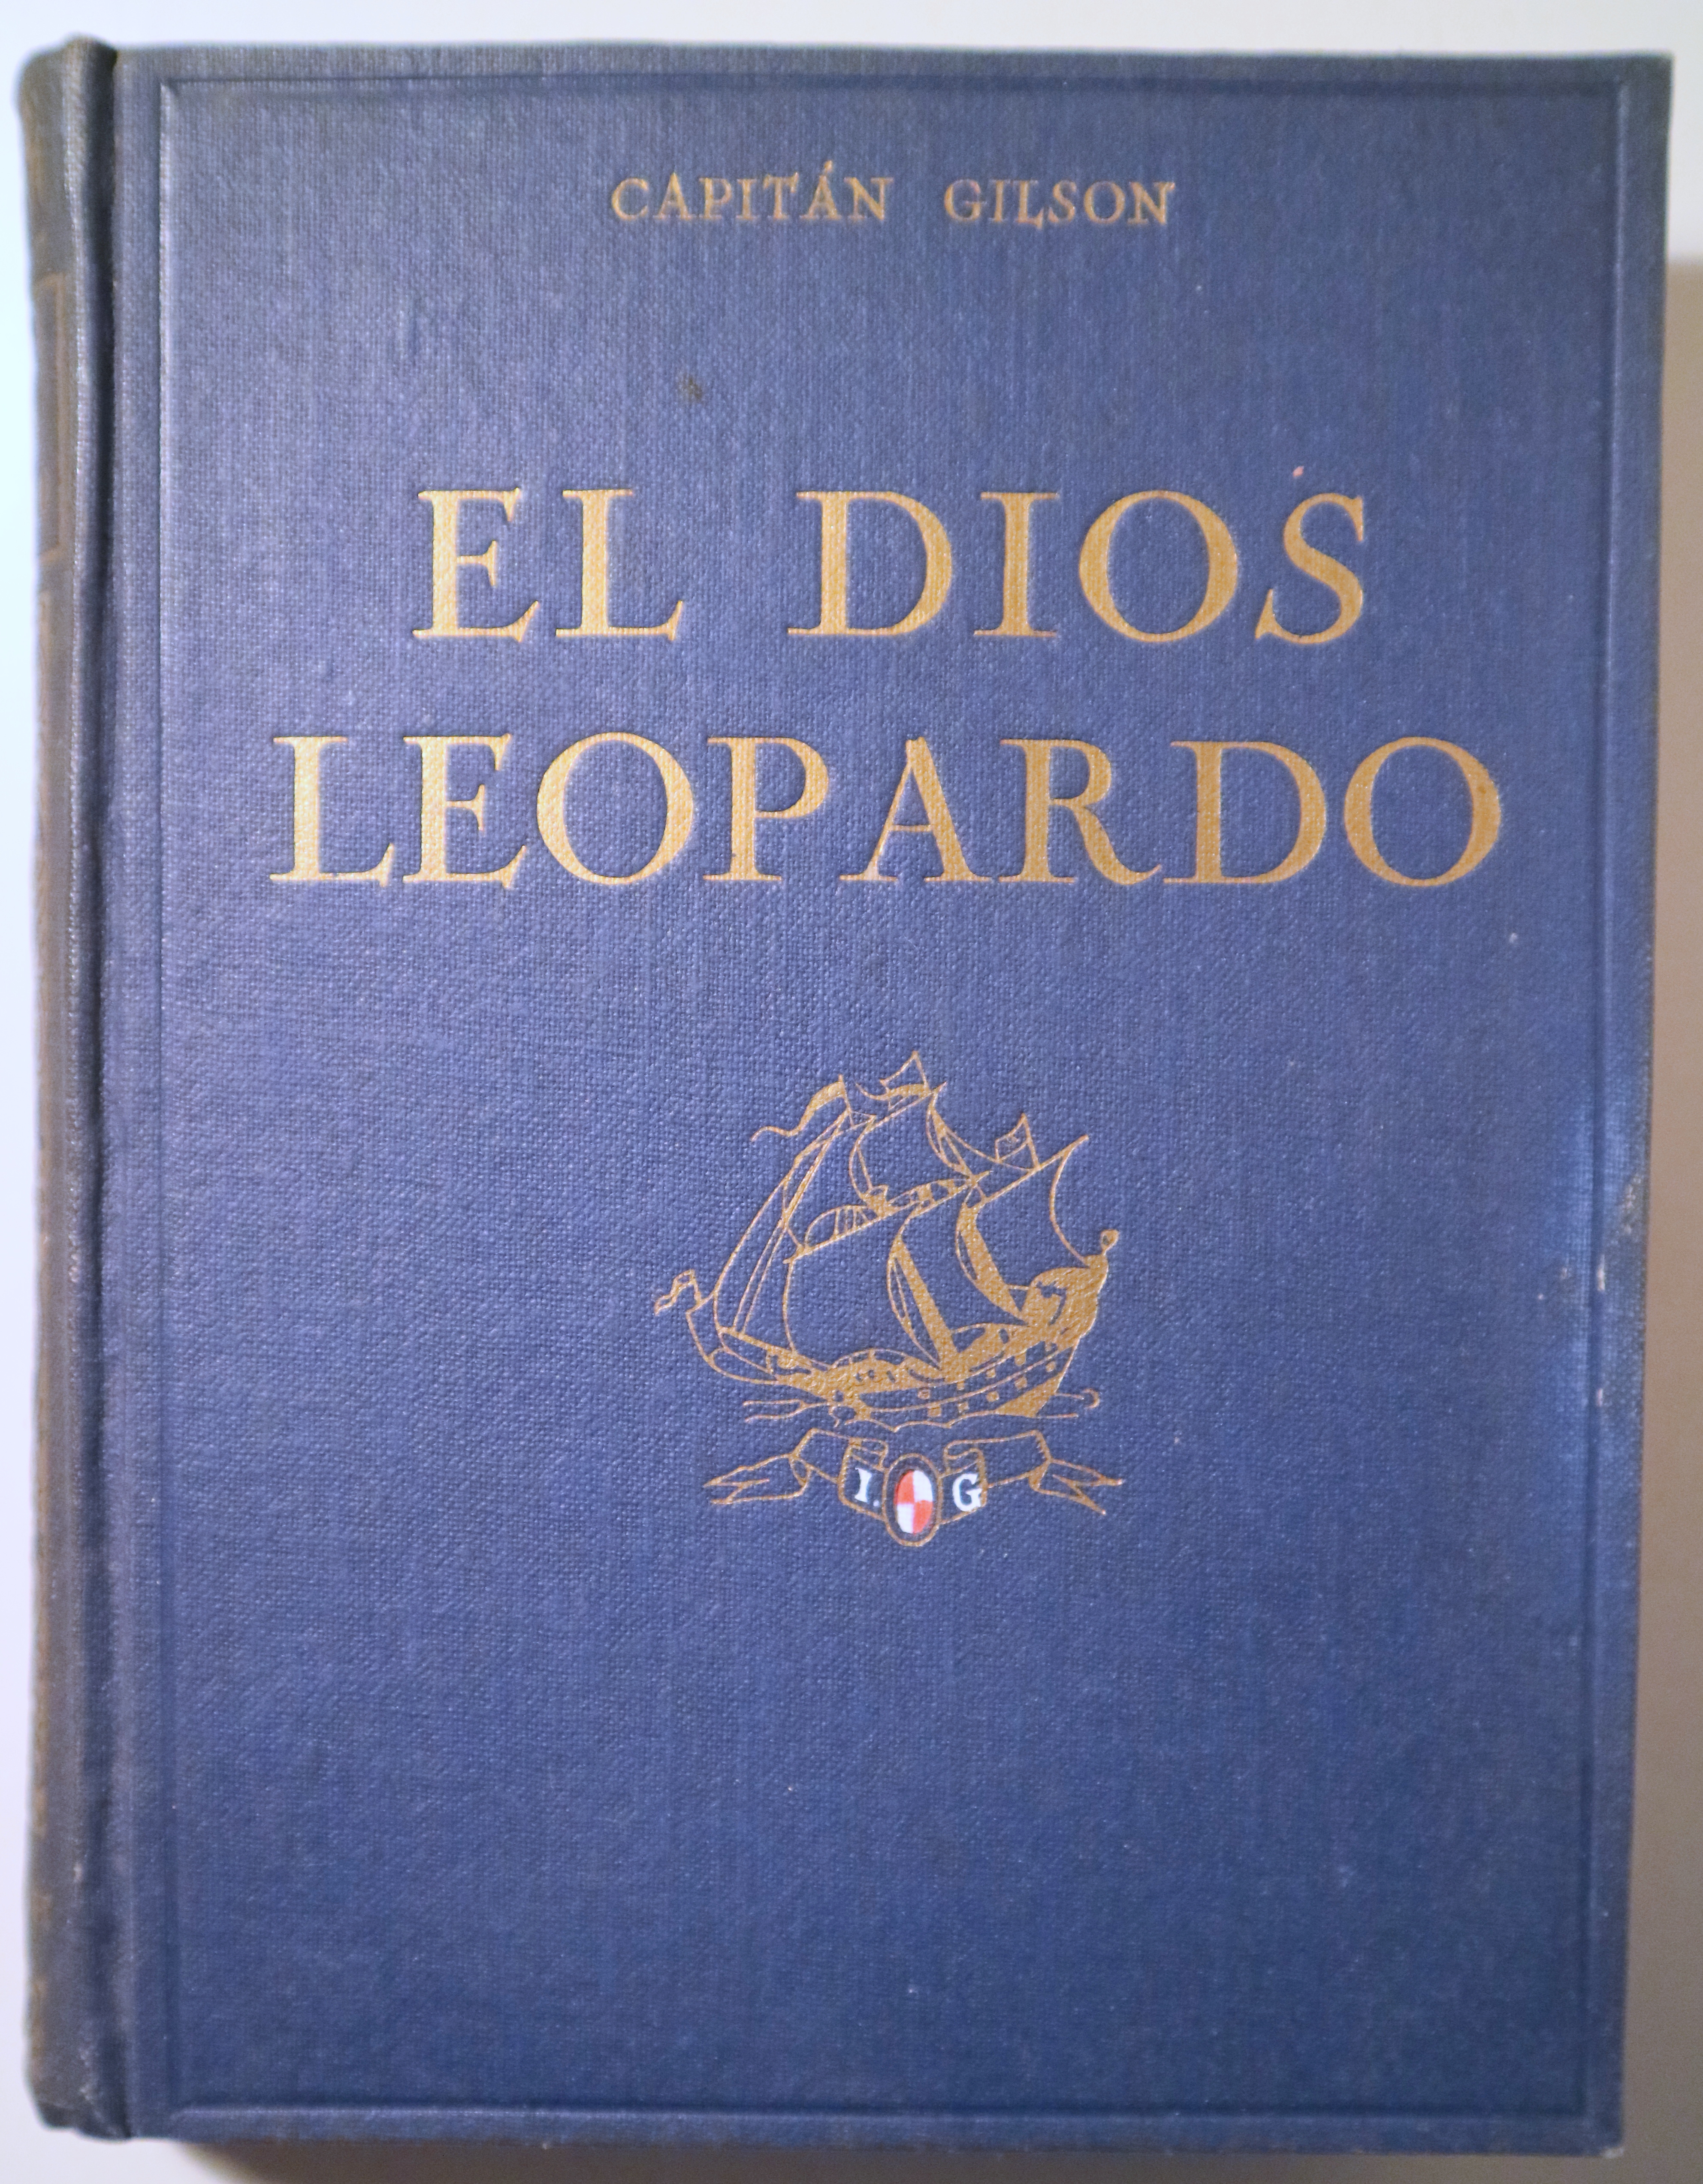 EL DIOS LEOPARDO - Barcelona 1930 - Ilustrado - 1ª edición en español